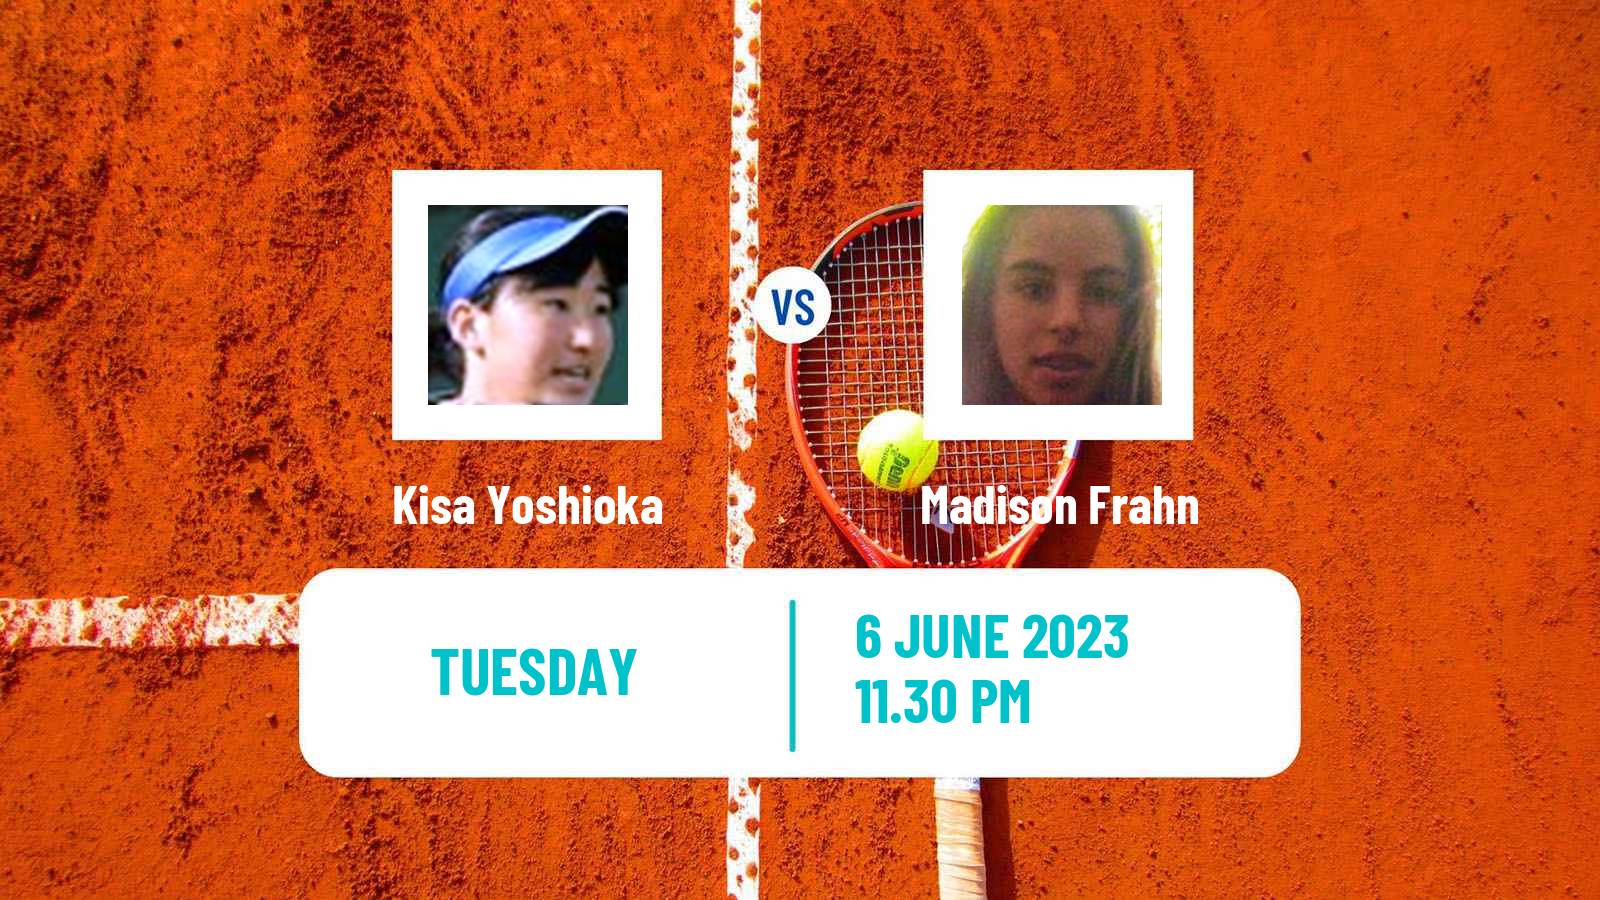 Tennis ITF W15 Kashiwa Women Kisa Yoshioka - Madison Frahn